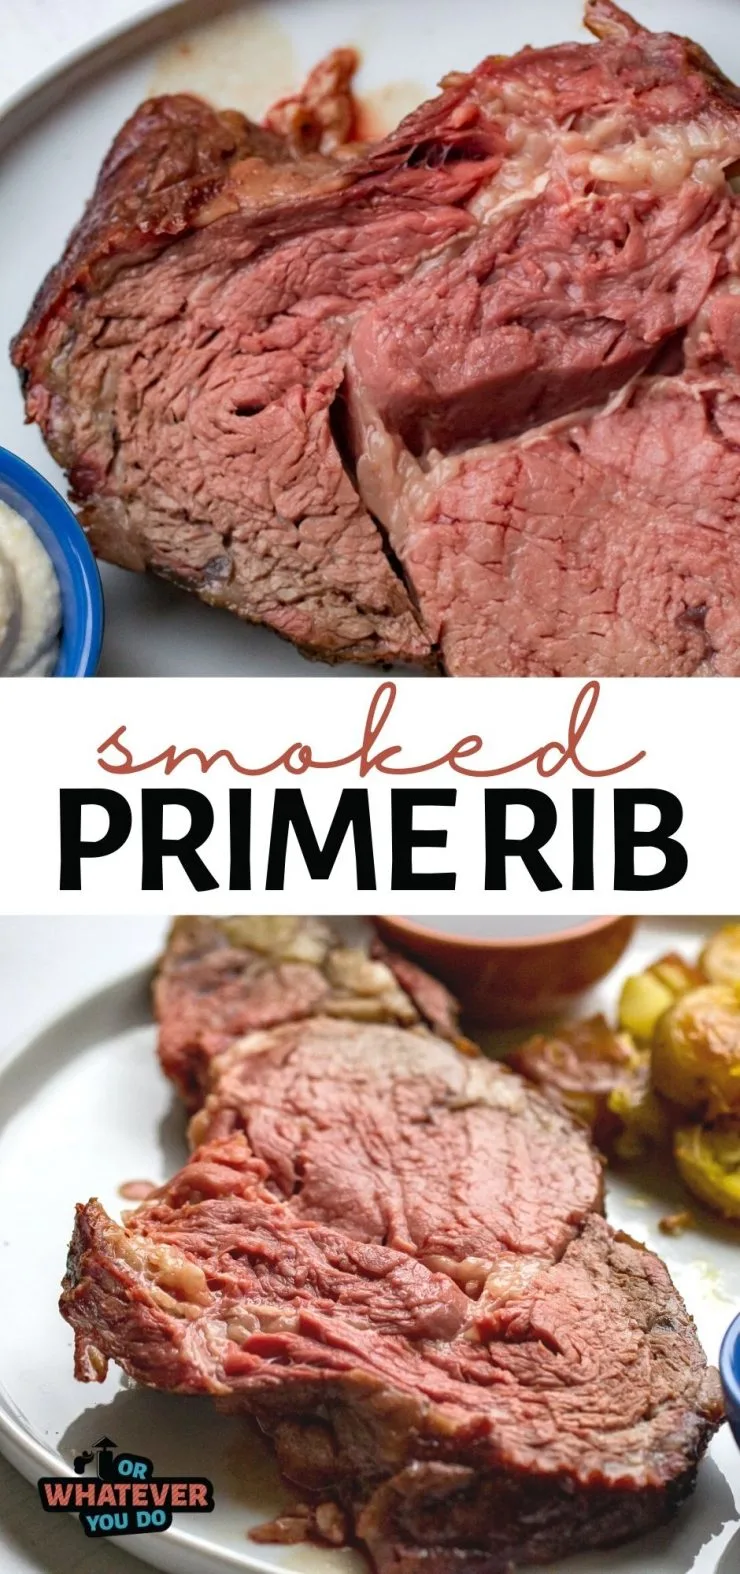 Traeger Prime Rib Rub Steak 